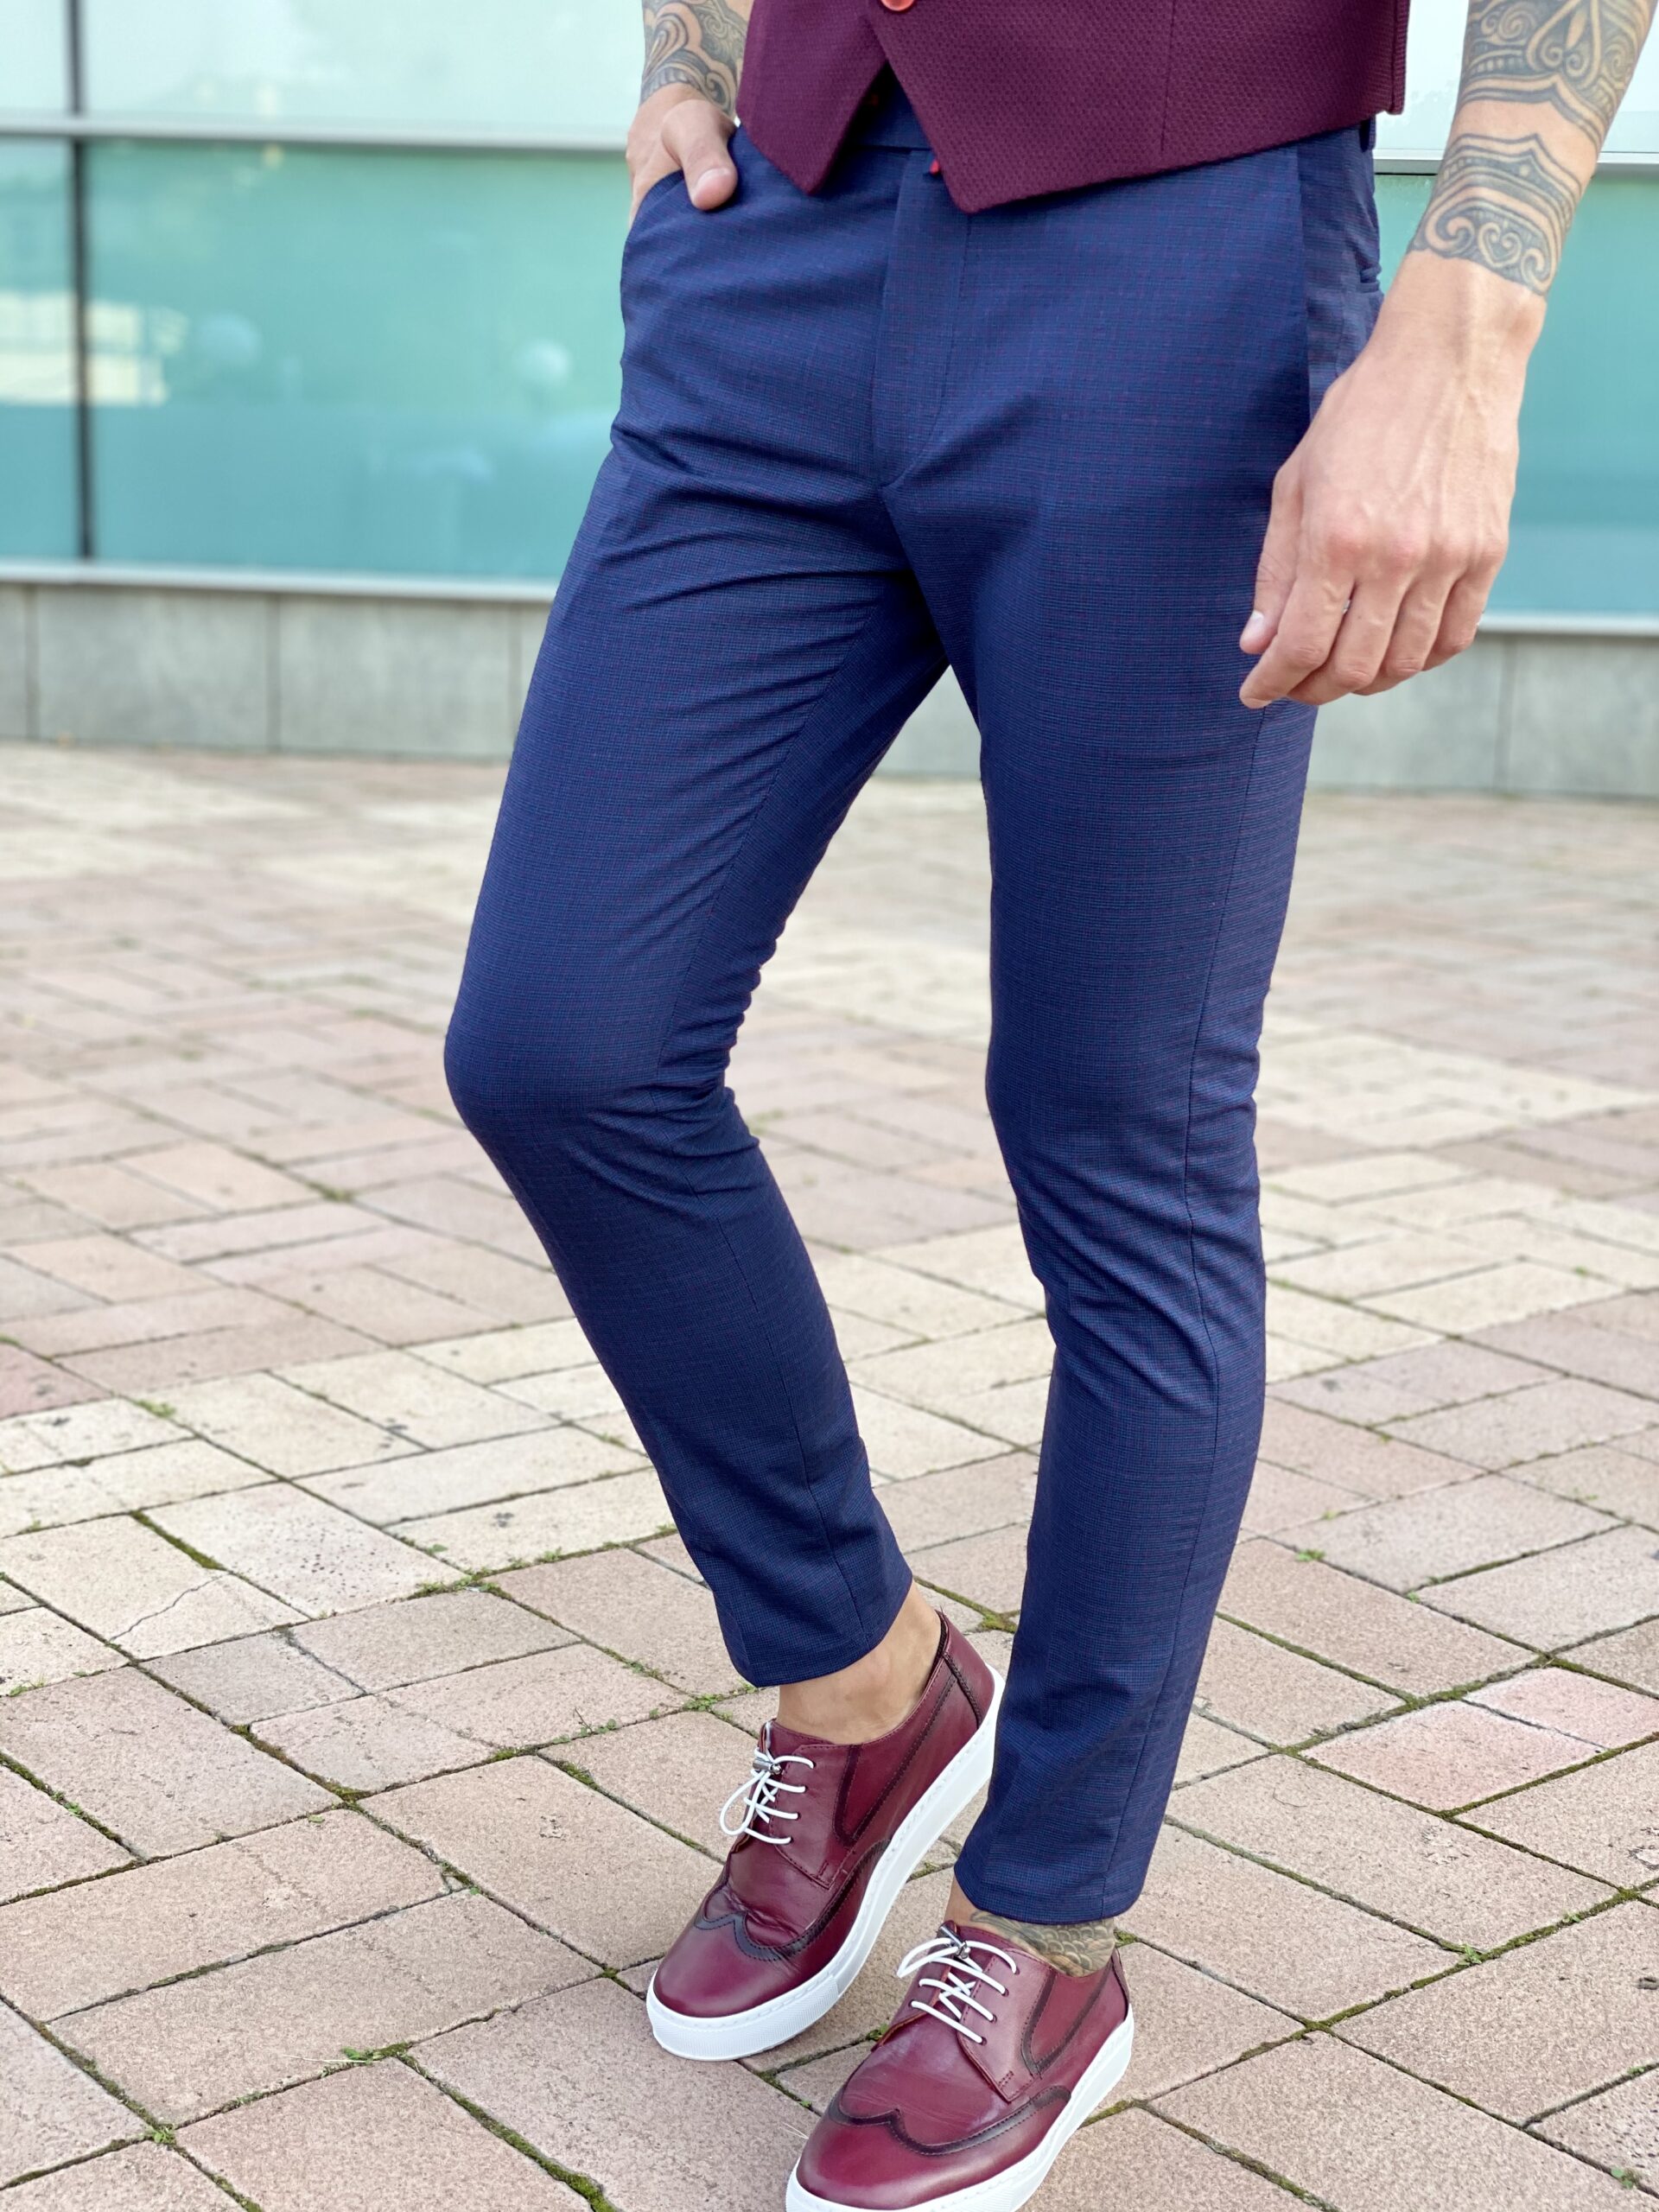 Стильные мужские брюки slim fit синего цвета. Арт.: 2473 – купить вмагазине мужской одежды Smartcasuals